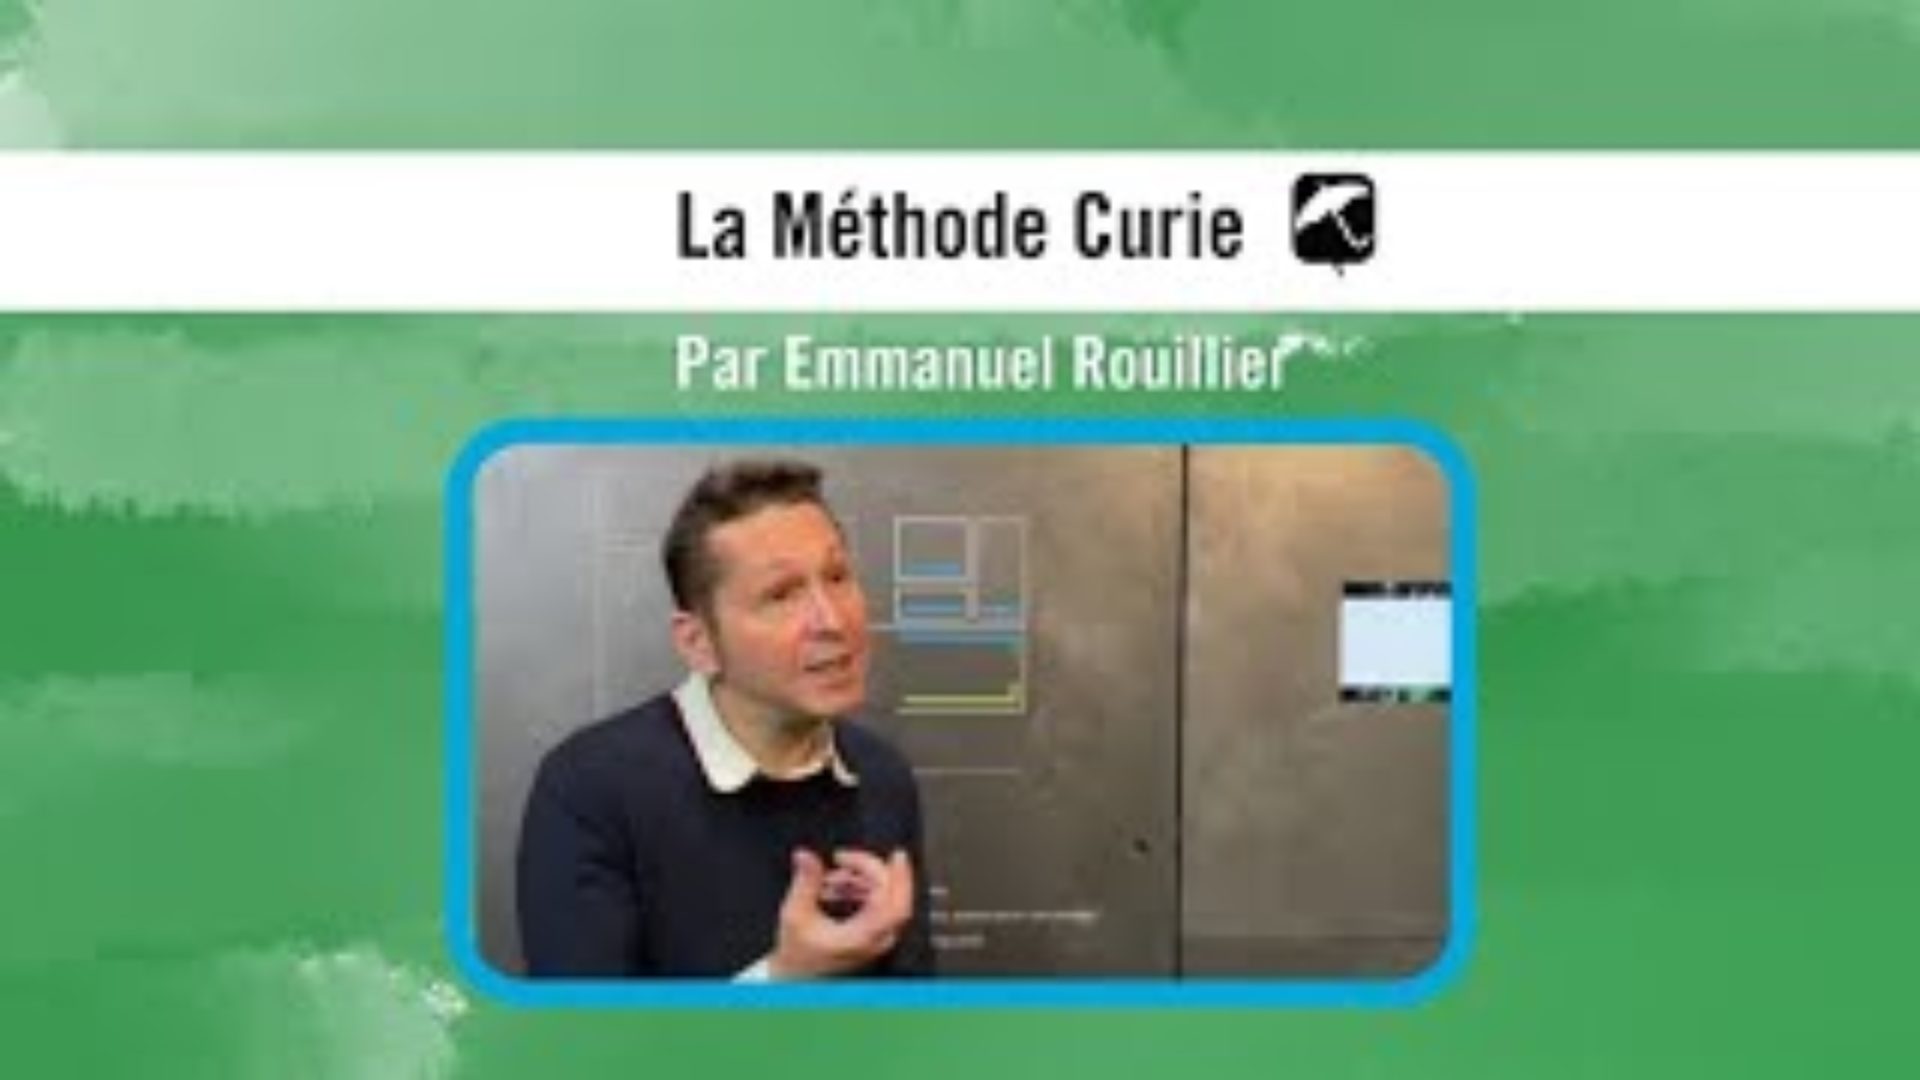 La Méthode Curie